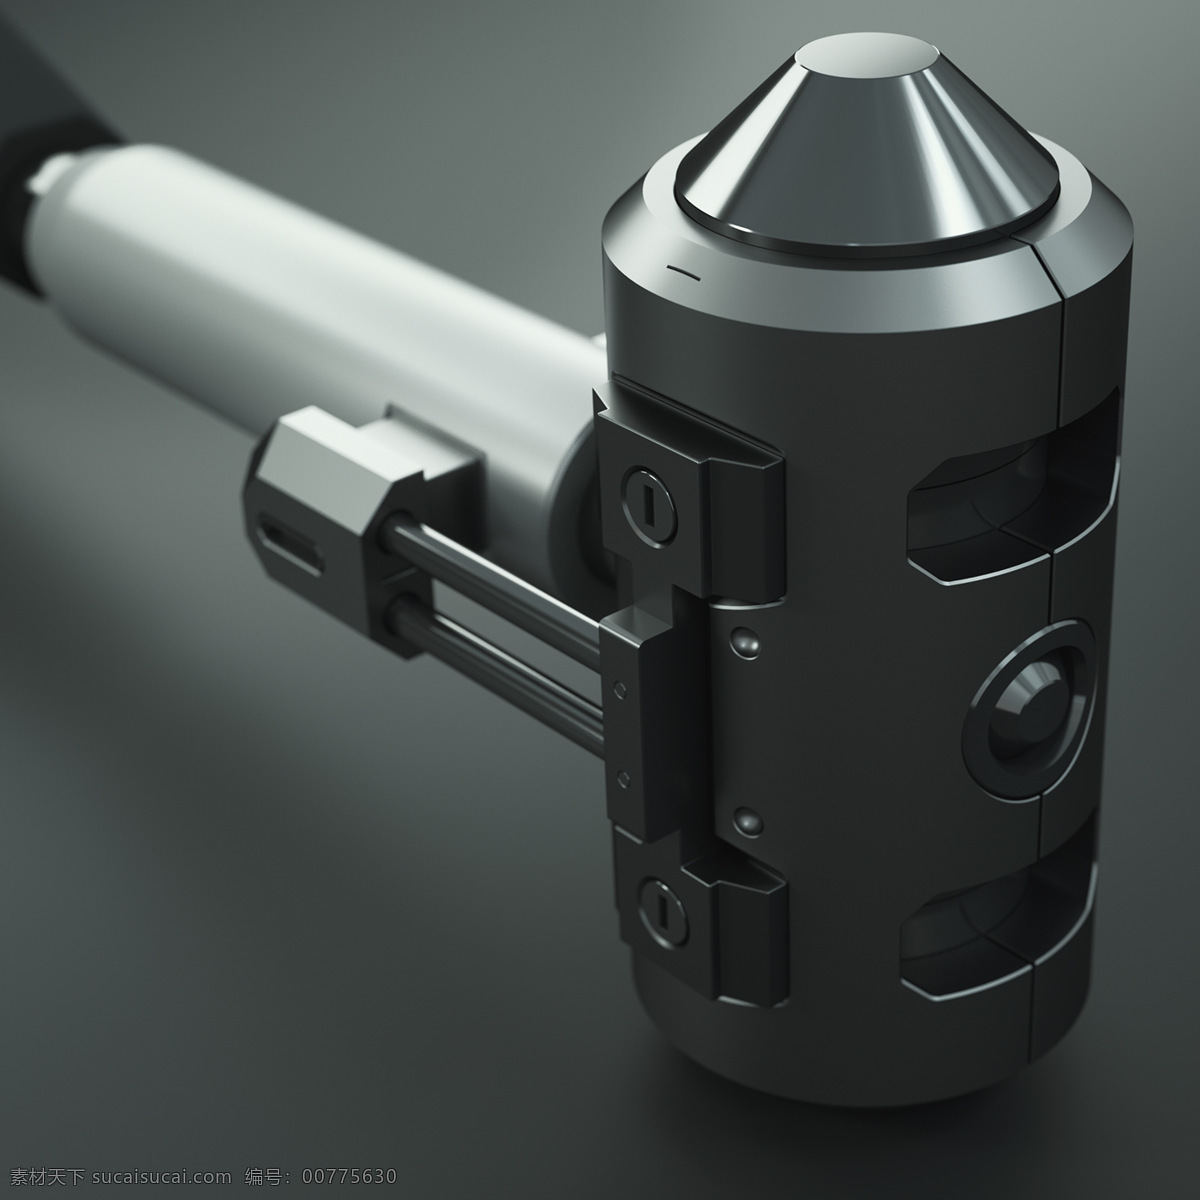 3d 概念 模型 黑色 武器 产品 概念设计 近战 外形设计